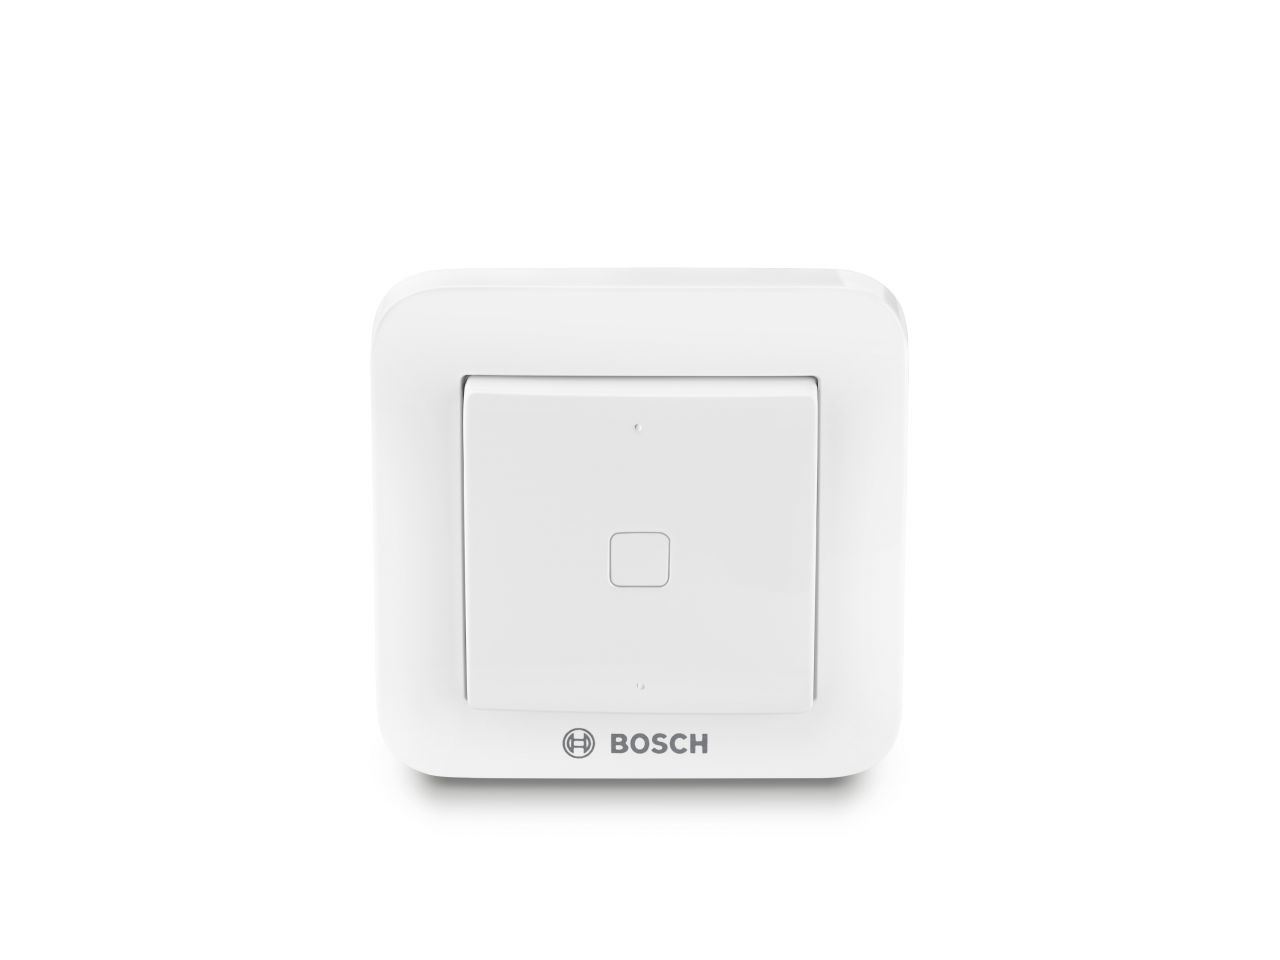 Bosch Smart Home Bosch Funk-Wandschalter Smart Home weiß, inkl. Batterie GLO775321364